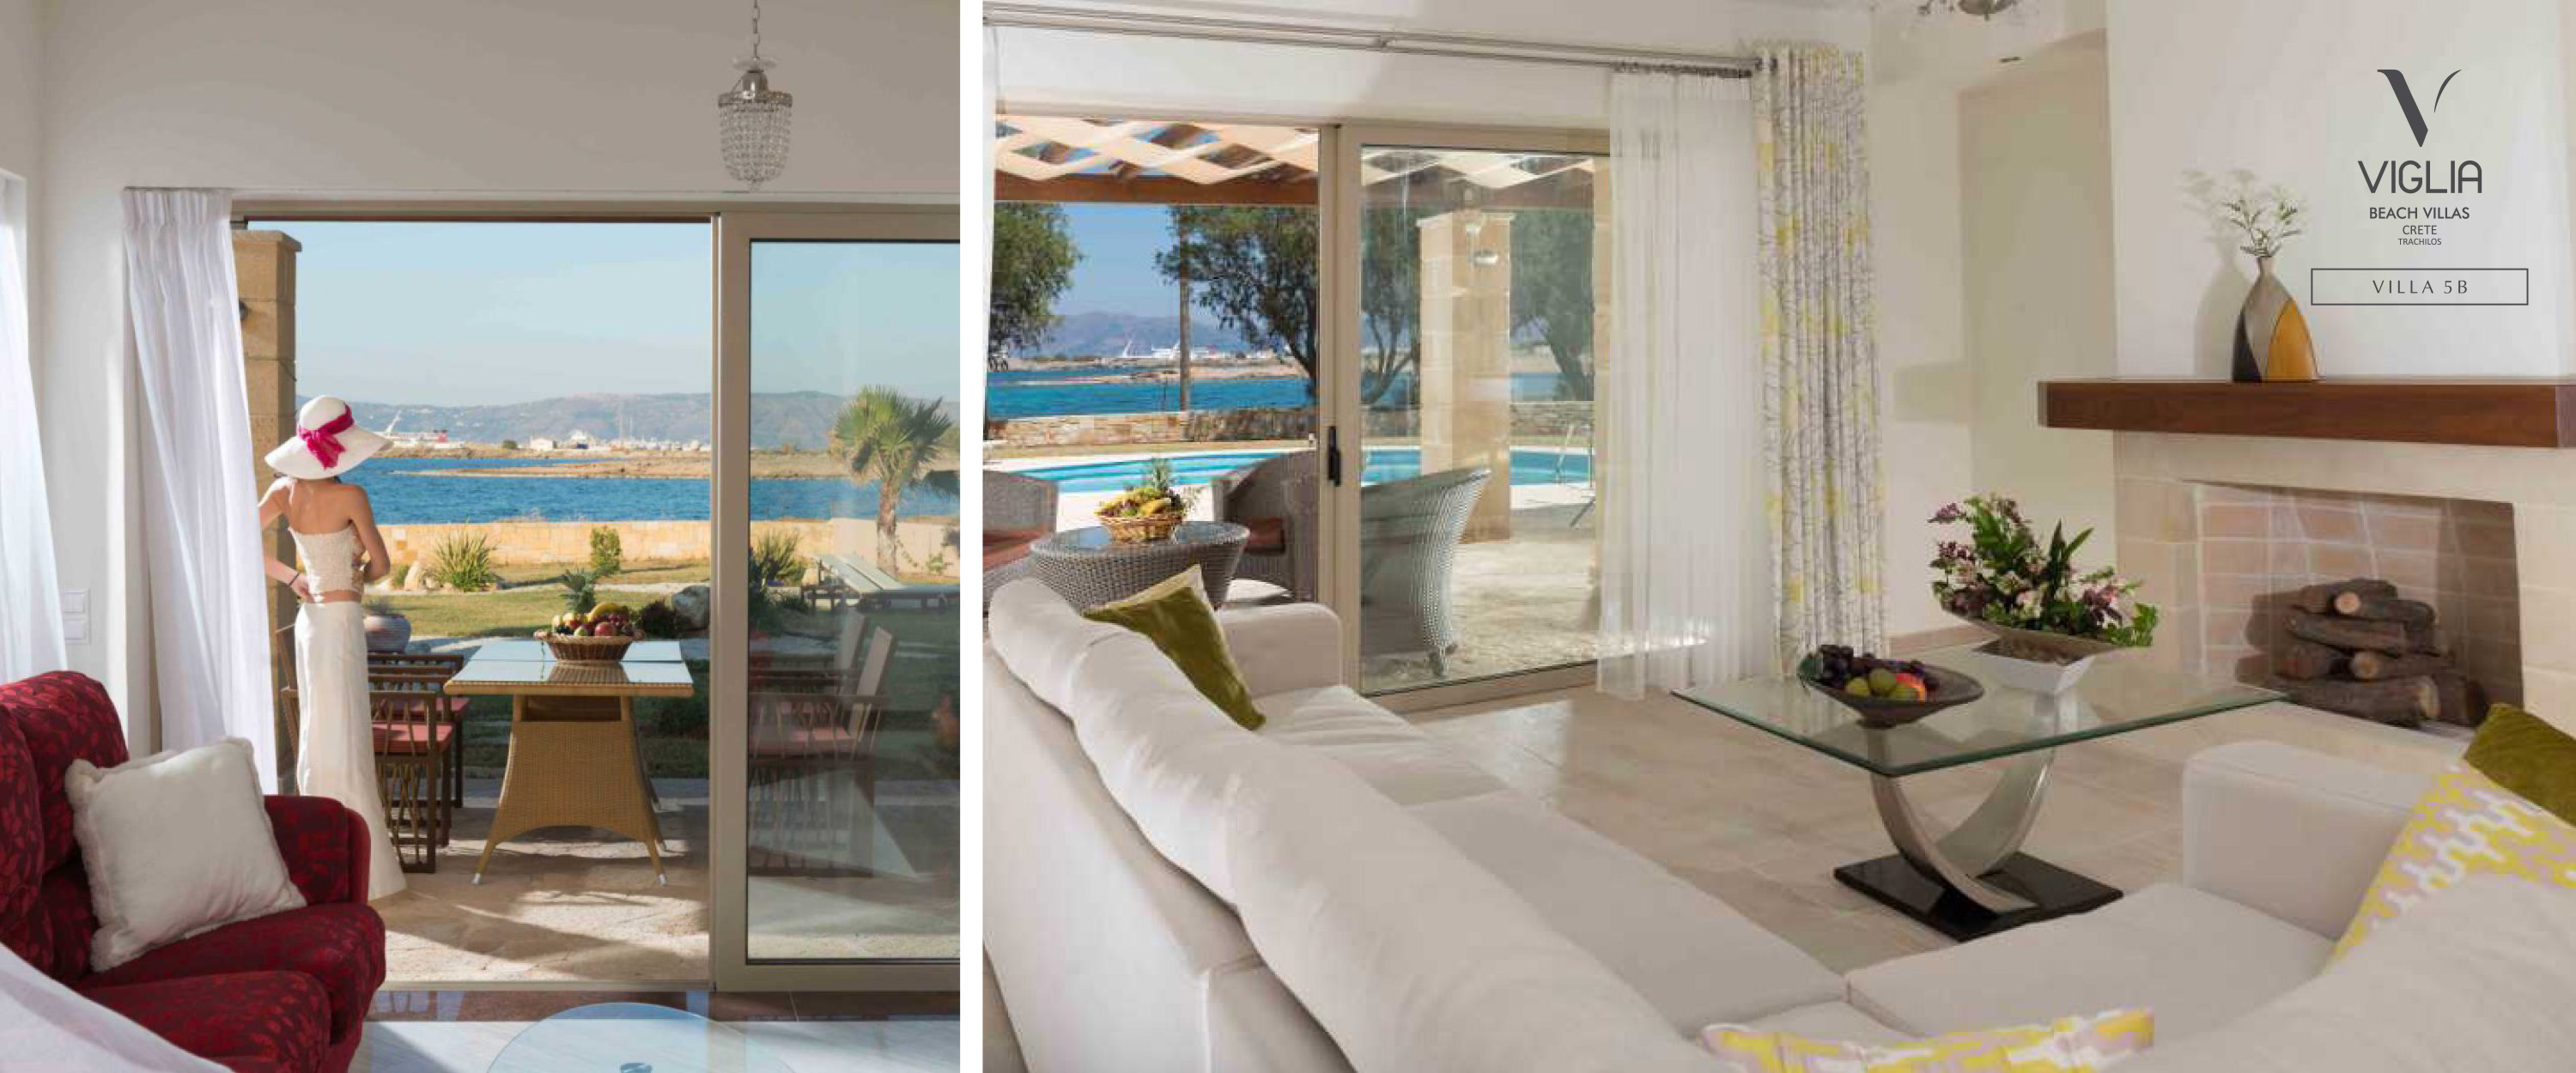 Viglia Beach Villas 3 +1 bedroom Villa